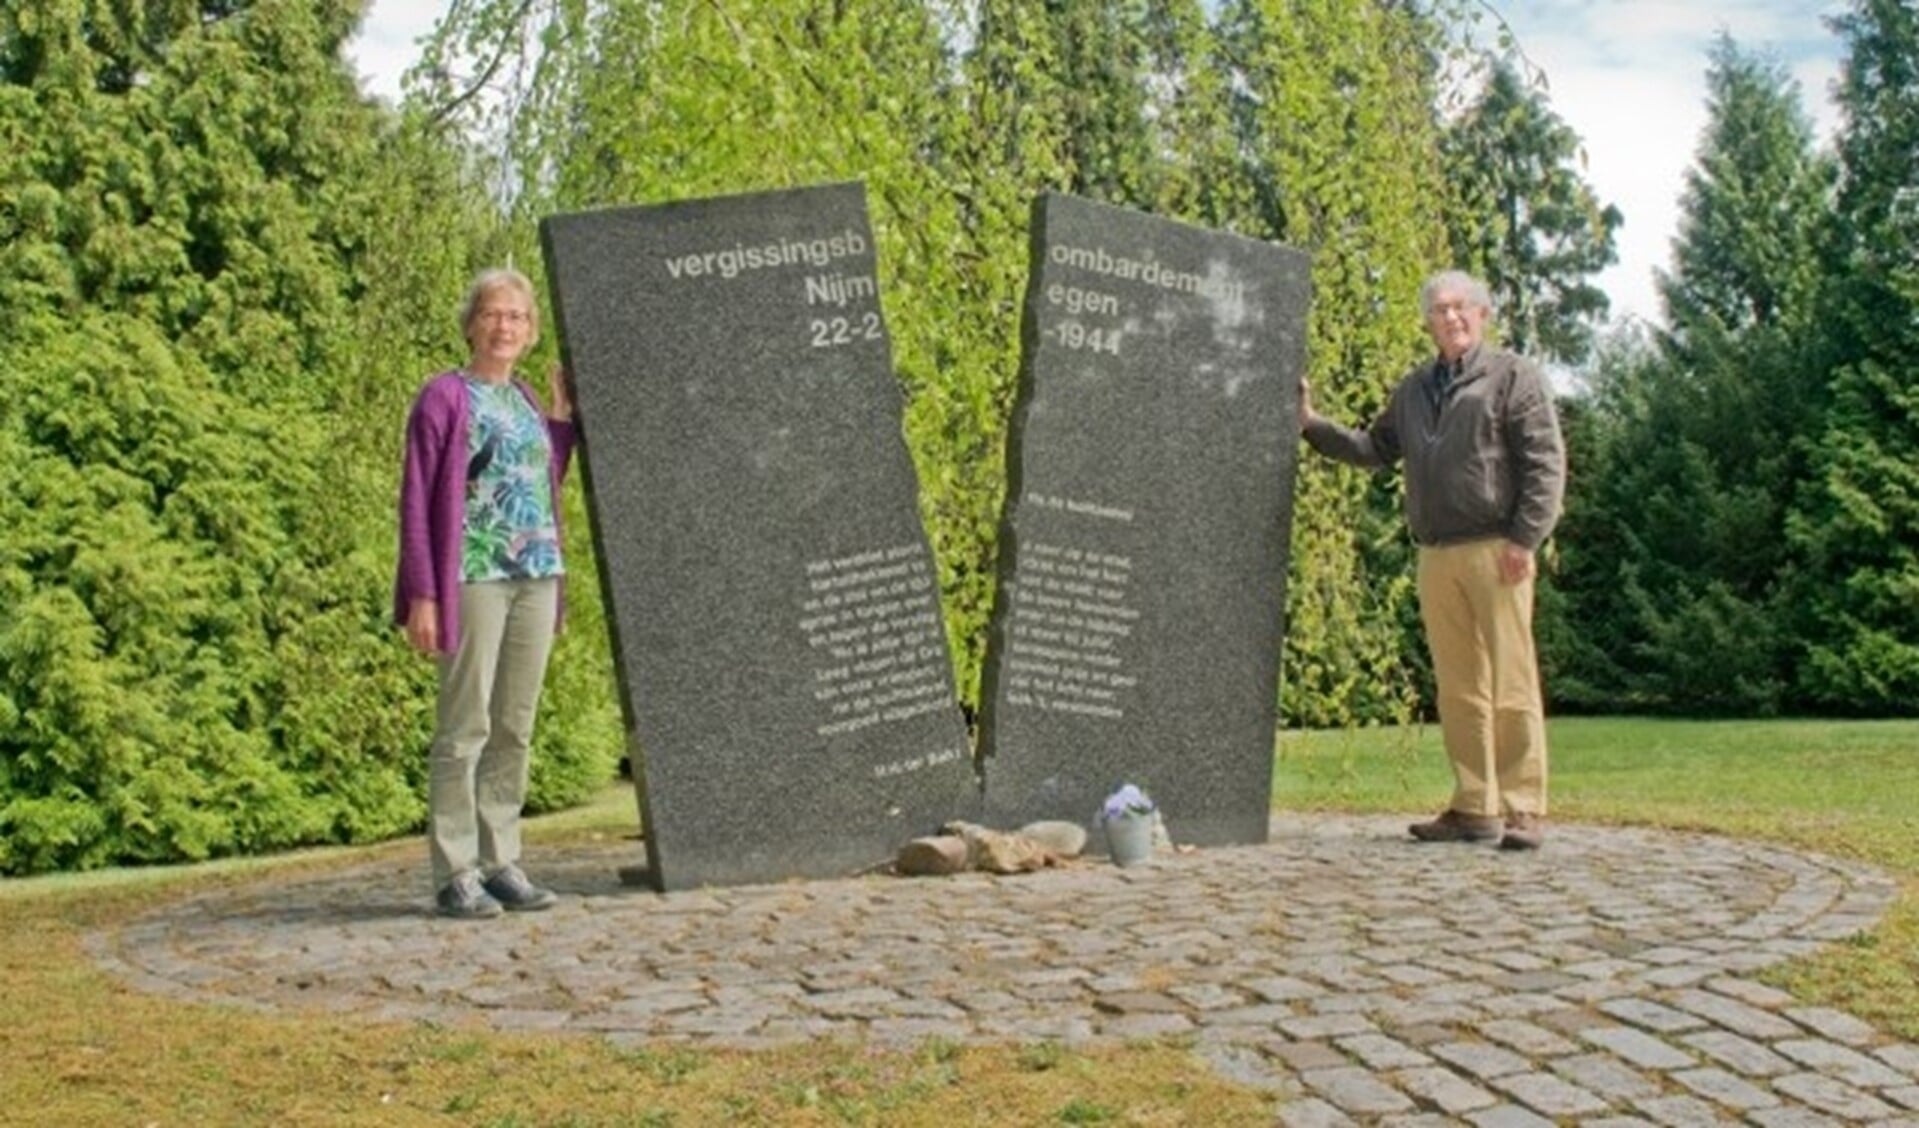 Buurtbewoonster Agnes en onderzoeker Bart willen dat de begraafplaats aan de Graafseweg meer erkenning krijgt. (Foto: Maaike van Helmond)